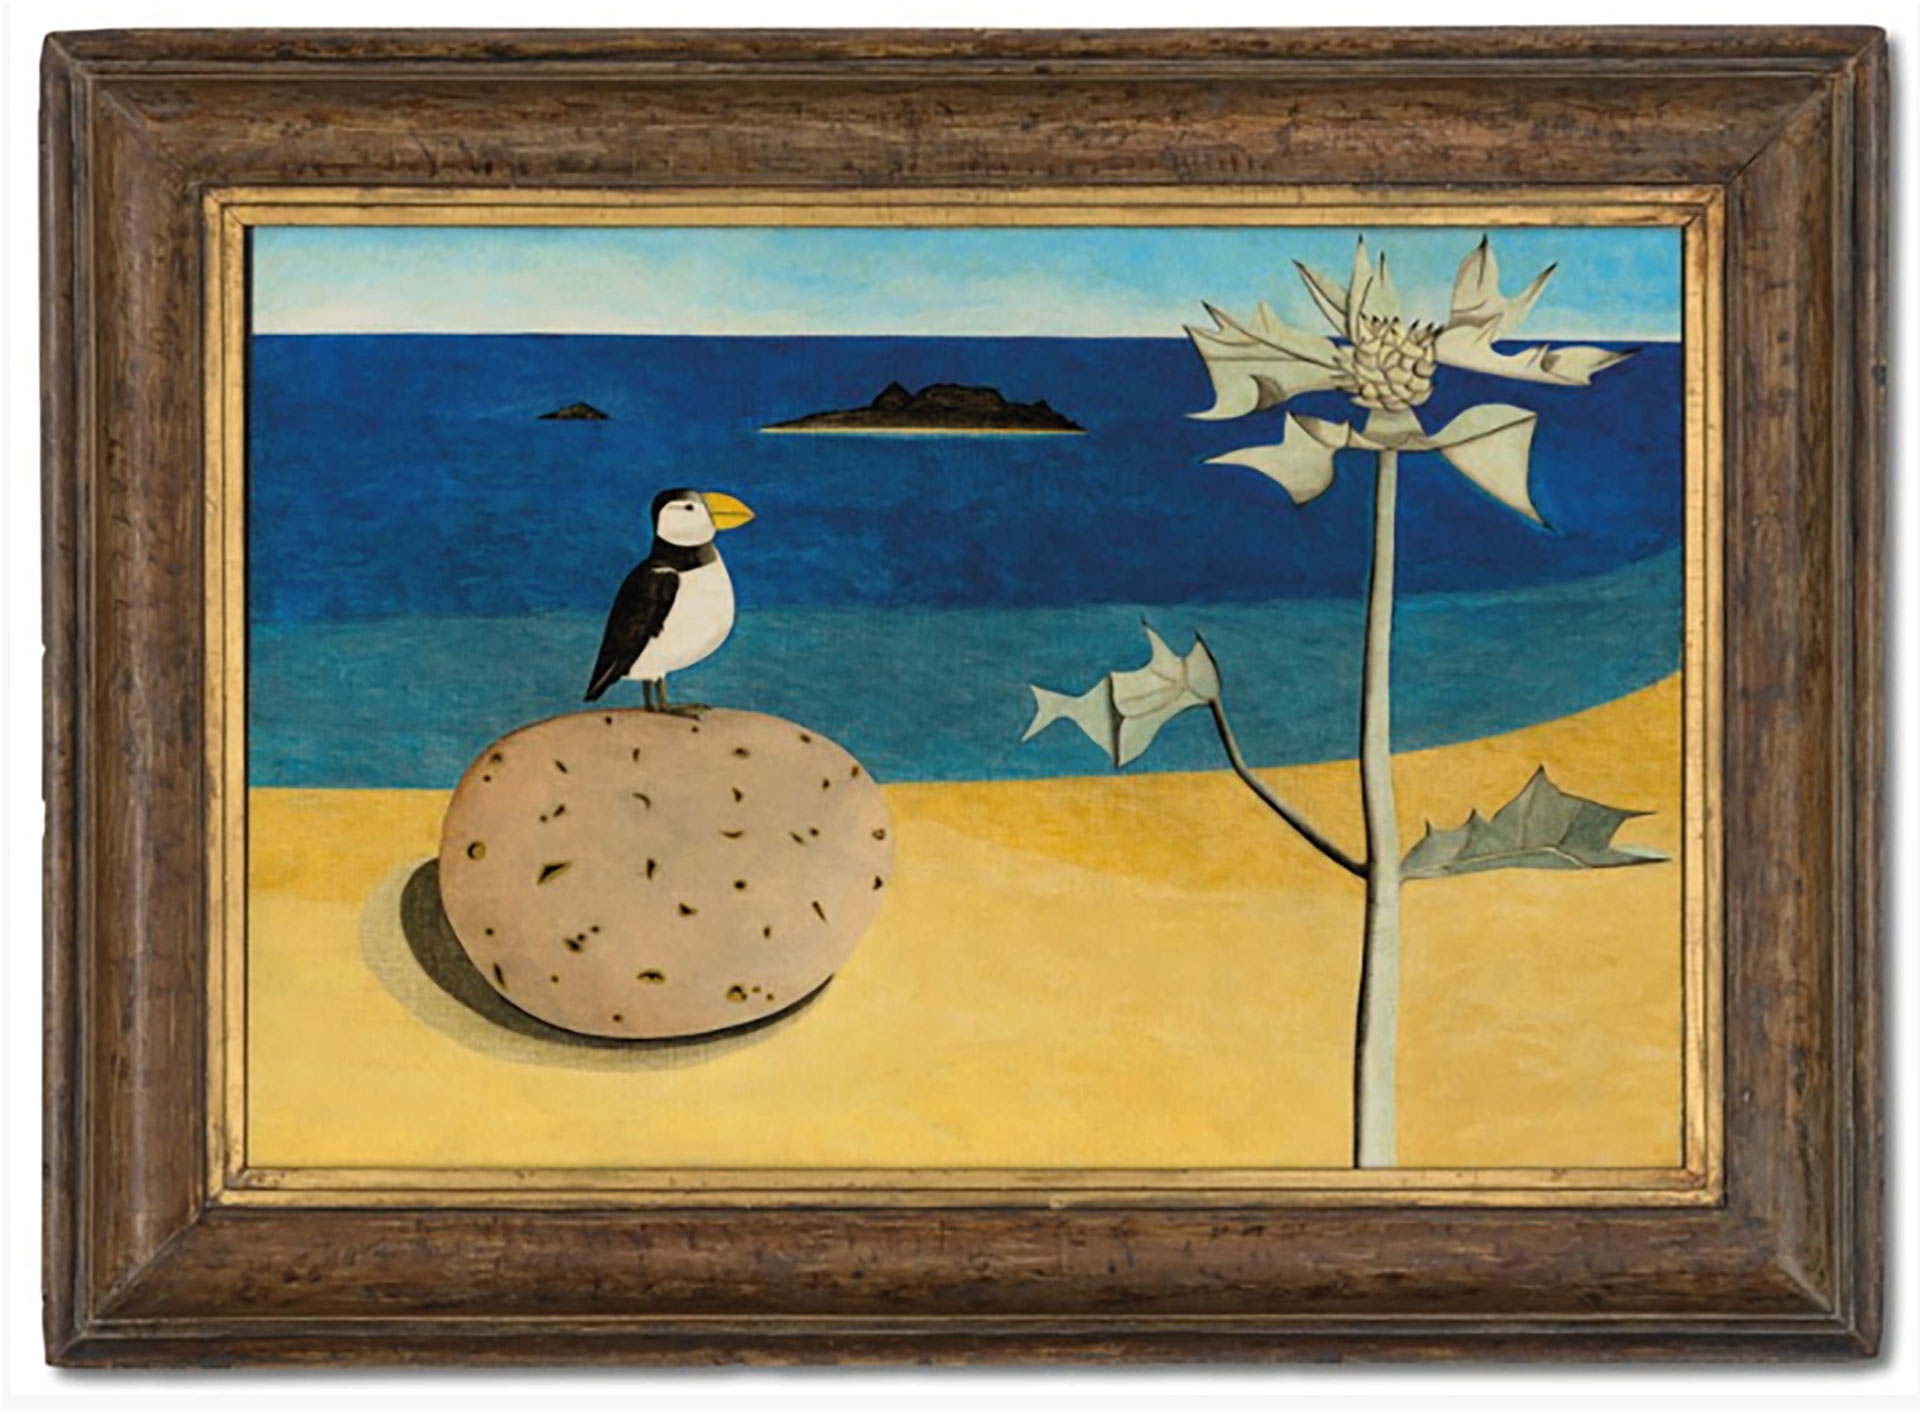 El paisaje marítimo "Scillonian Beachscape", de Lucian Freud, fue vendido por 4,60 millones de libras en una subasta de Christie's